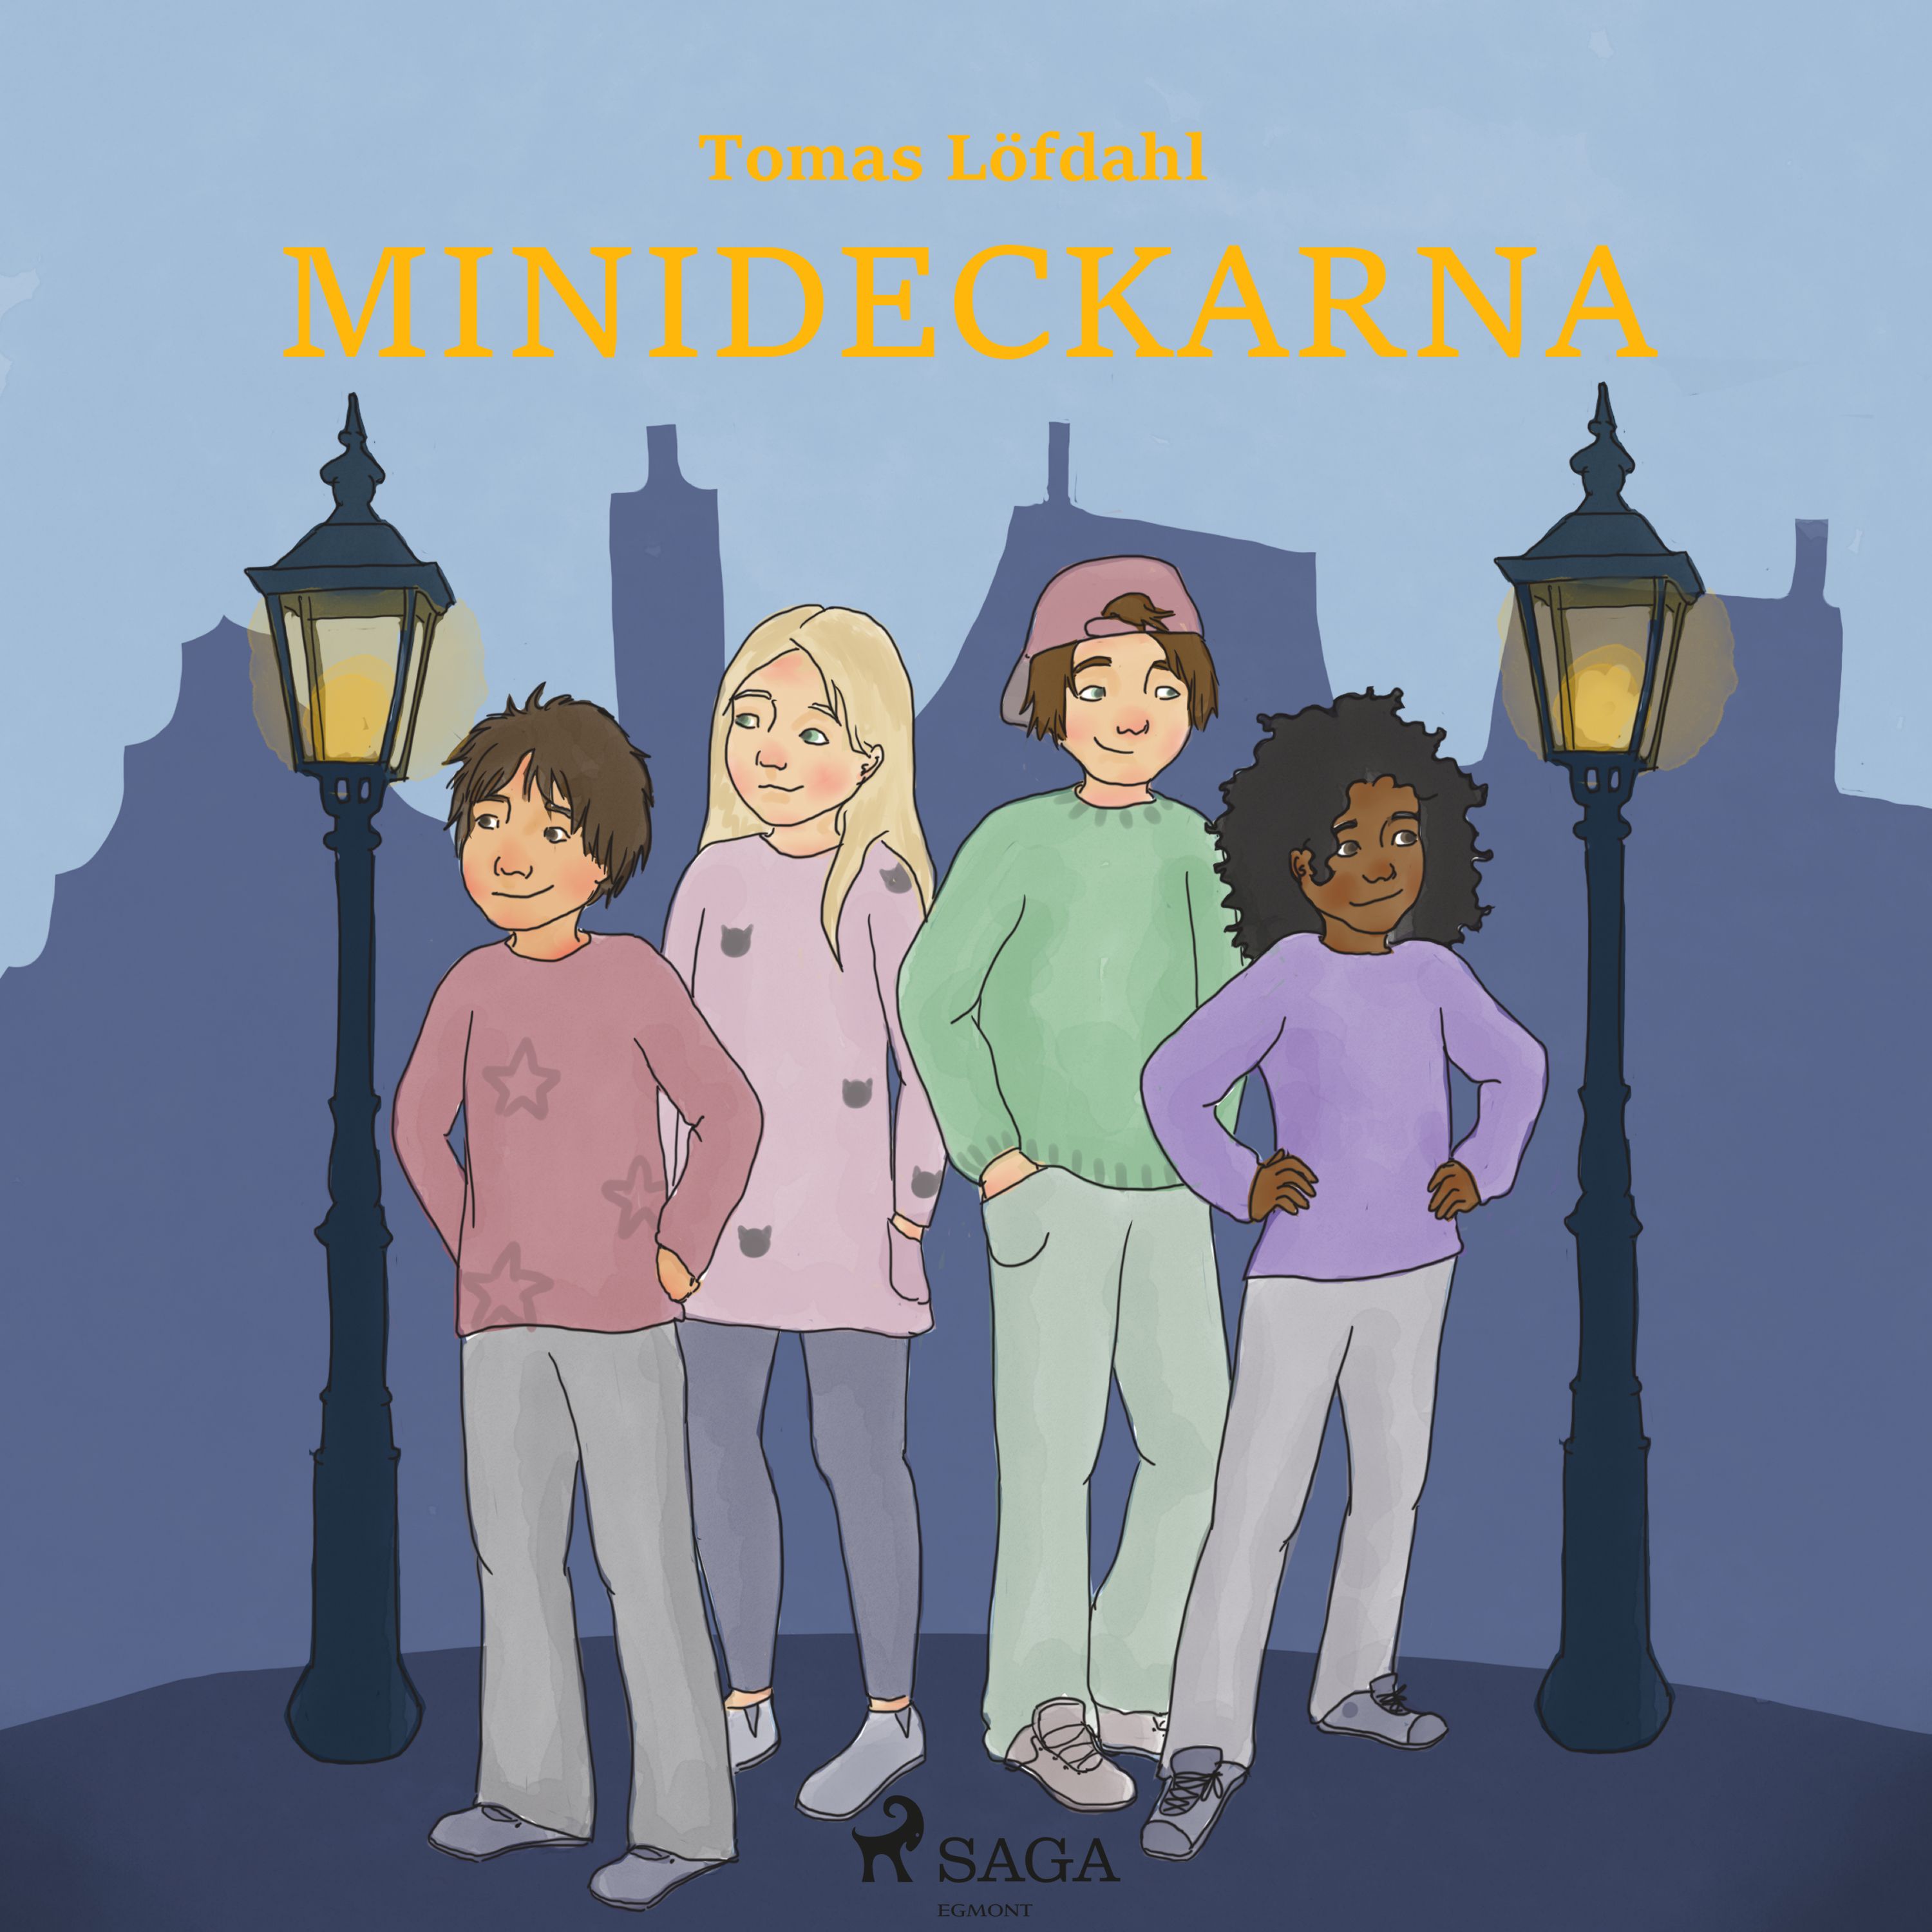 Minideckarna, audiobook by Tomas Löfdahl